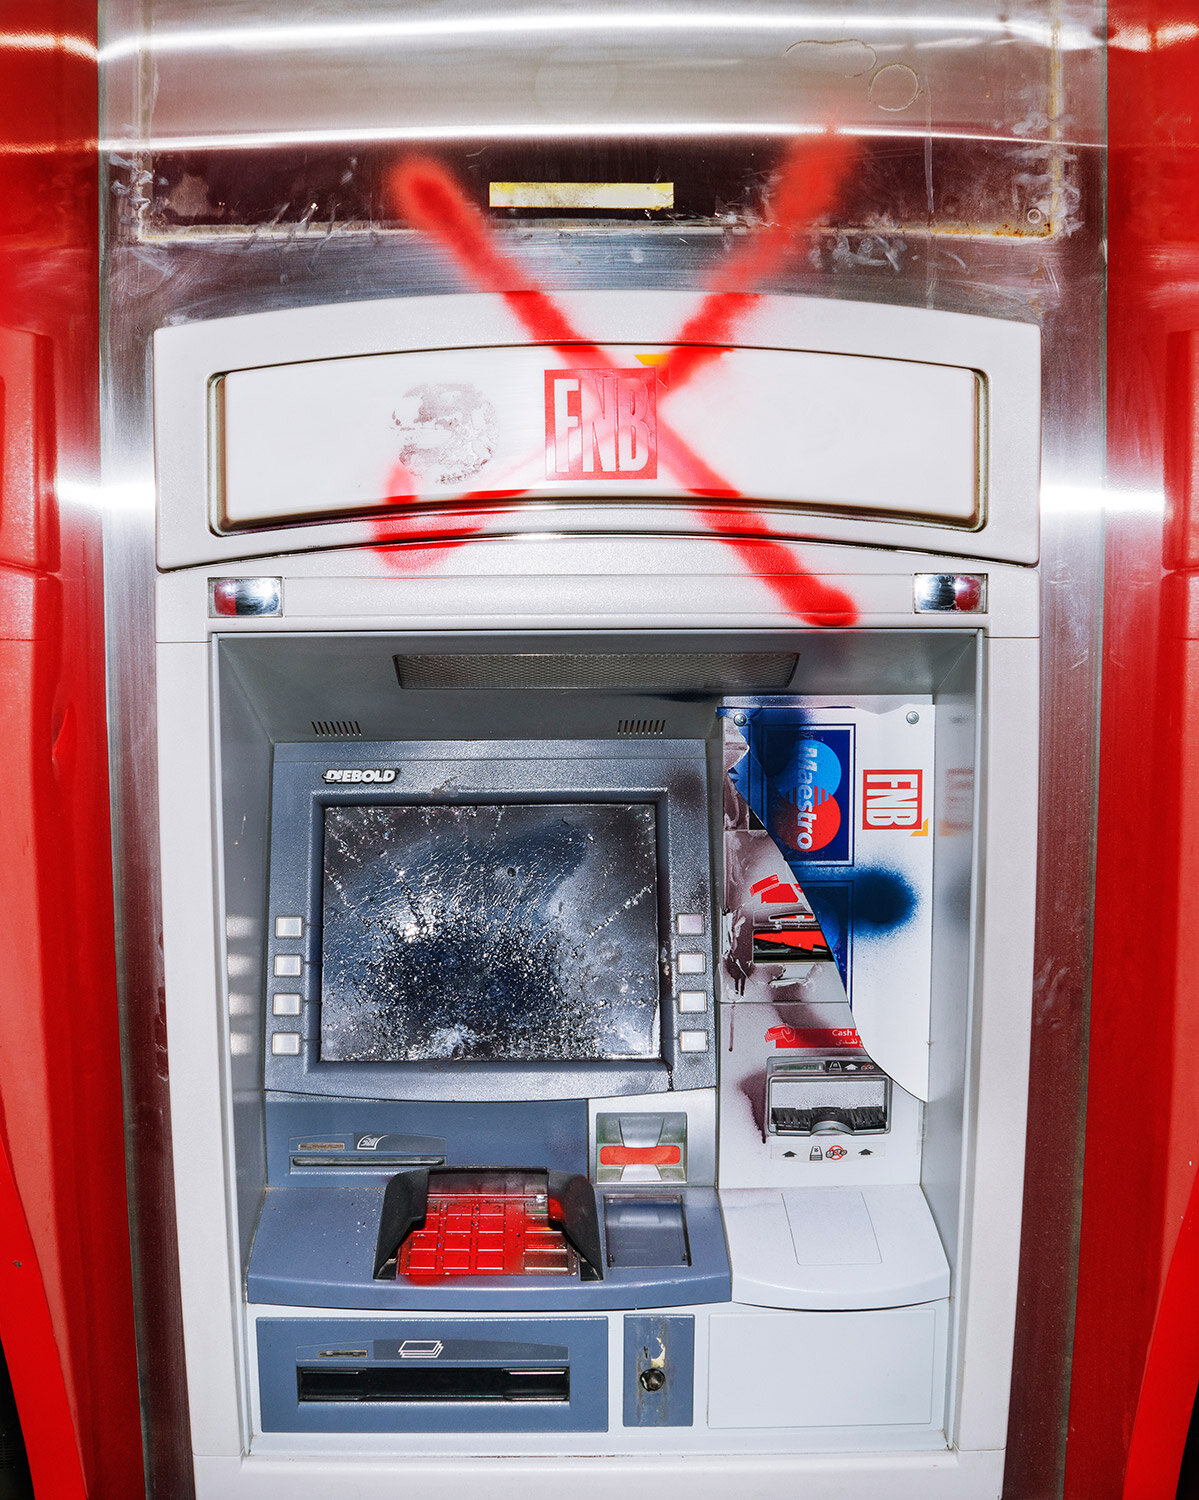   ATM 3 (red X).  Beirut, Lebanon, 2020   Archival fiber inkjet print   20 x 16 inches  